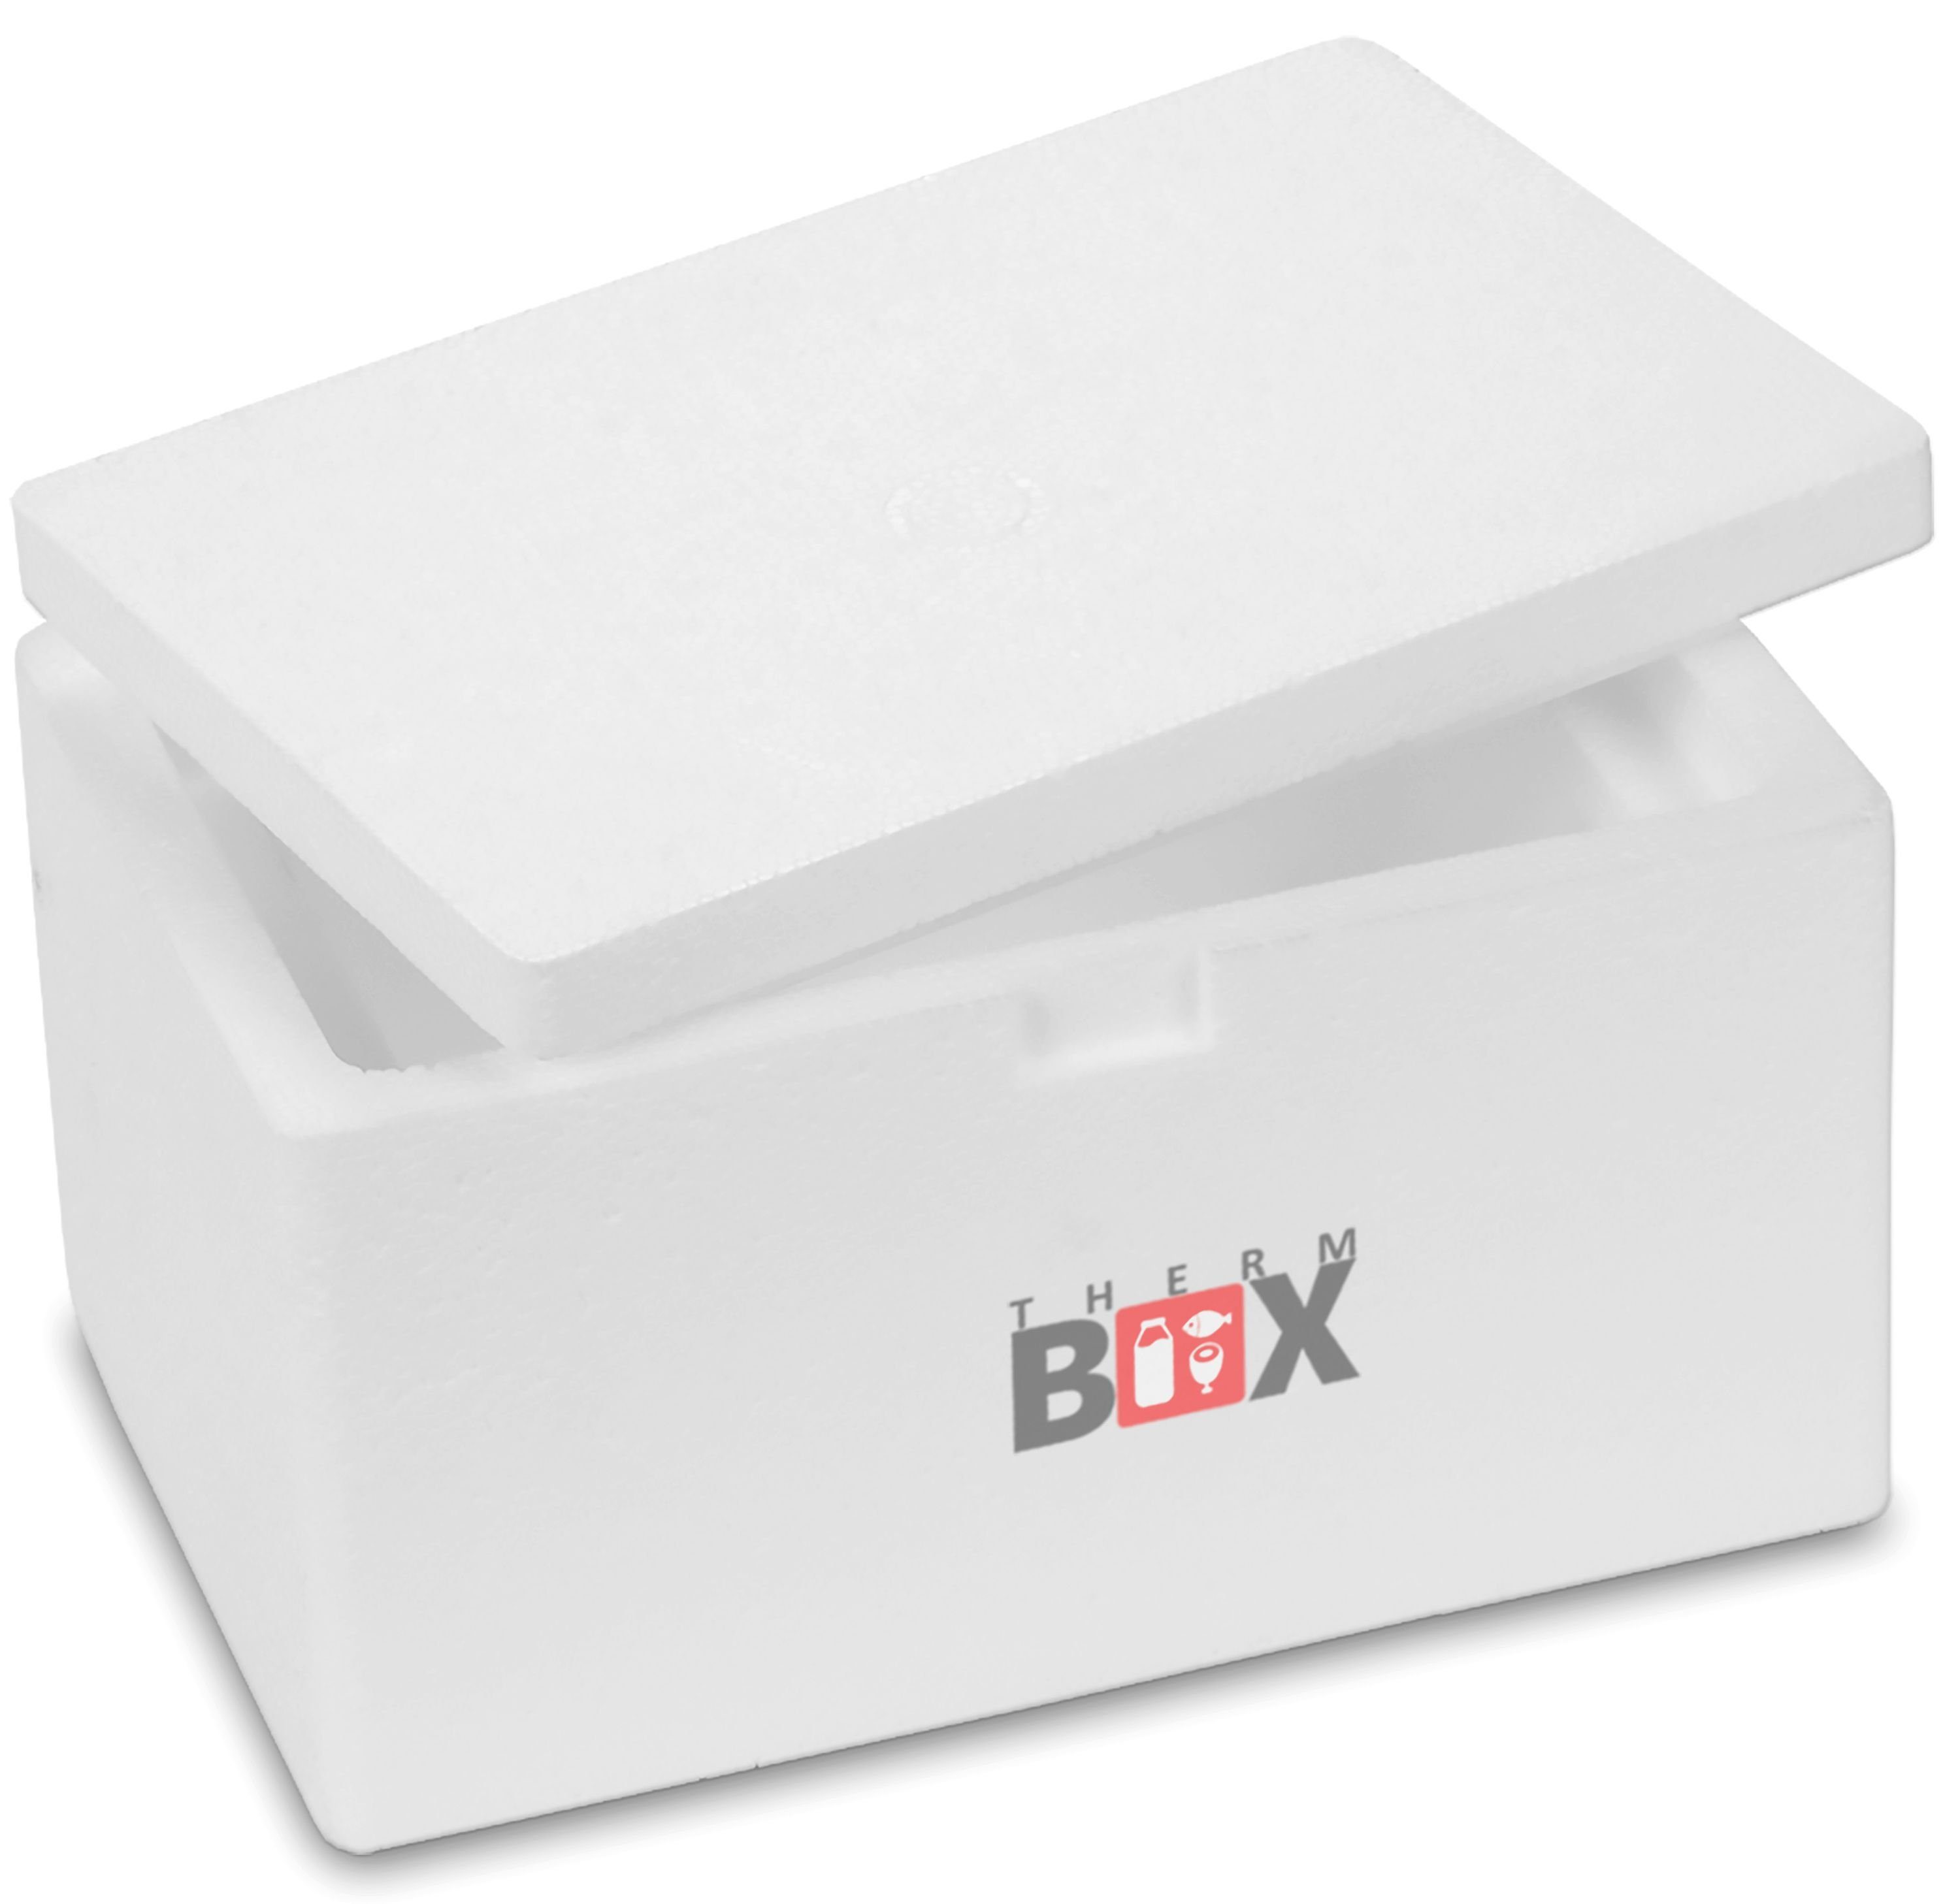 THERM-BOX Thermobehälter Styroporbox 1W 25x16x14cm Volumen 1,6L, Styropor-Verdichtet, (1, 0-tlg., Box mit Deckel im Karton), Wand 3cm Isolierbox Thermobox Kühlbox Warmhaltebox Wiederverwendbar